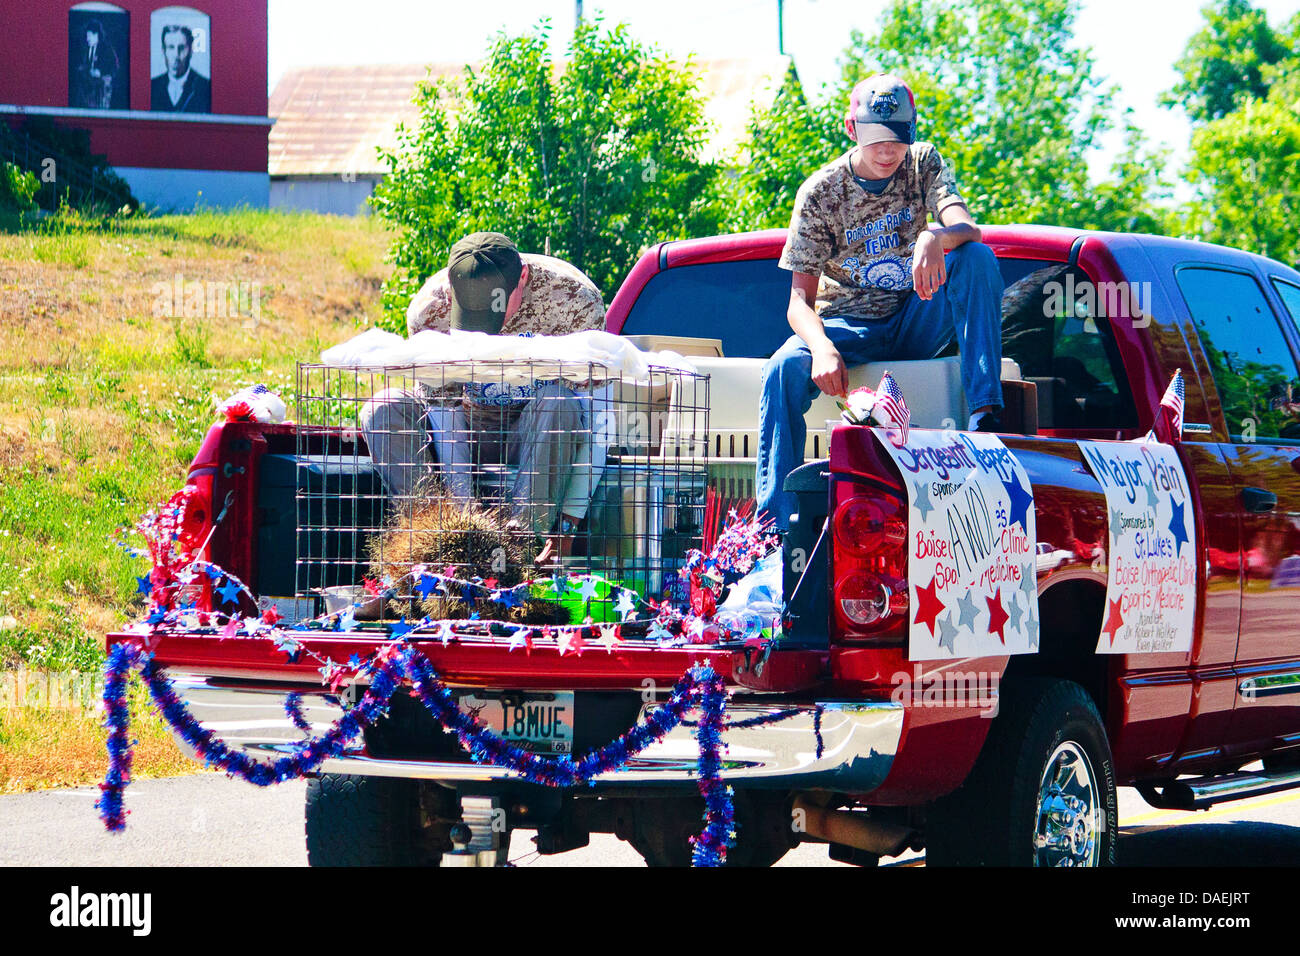 Zwei Männer sitzen im Bett von verzierten roten Pickup-Truck zusammen mit erbeuteten wilde Stachelschwein an jährlichen 4. Juli Parade im Rat, ID Stockfoto